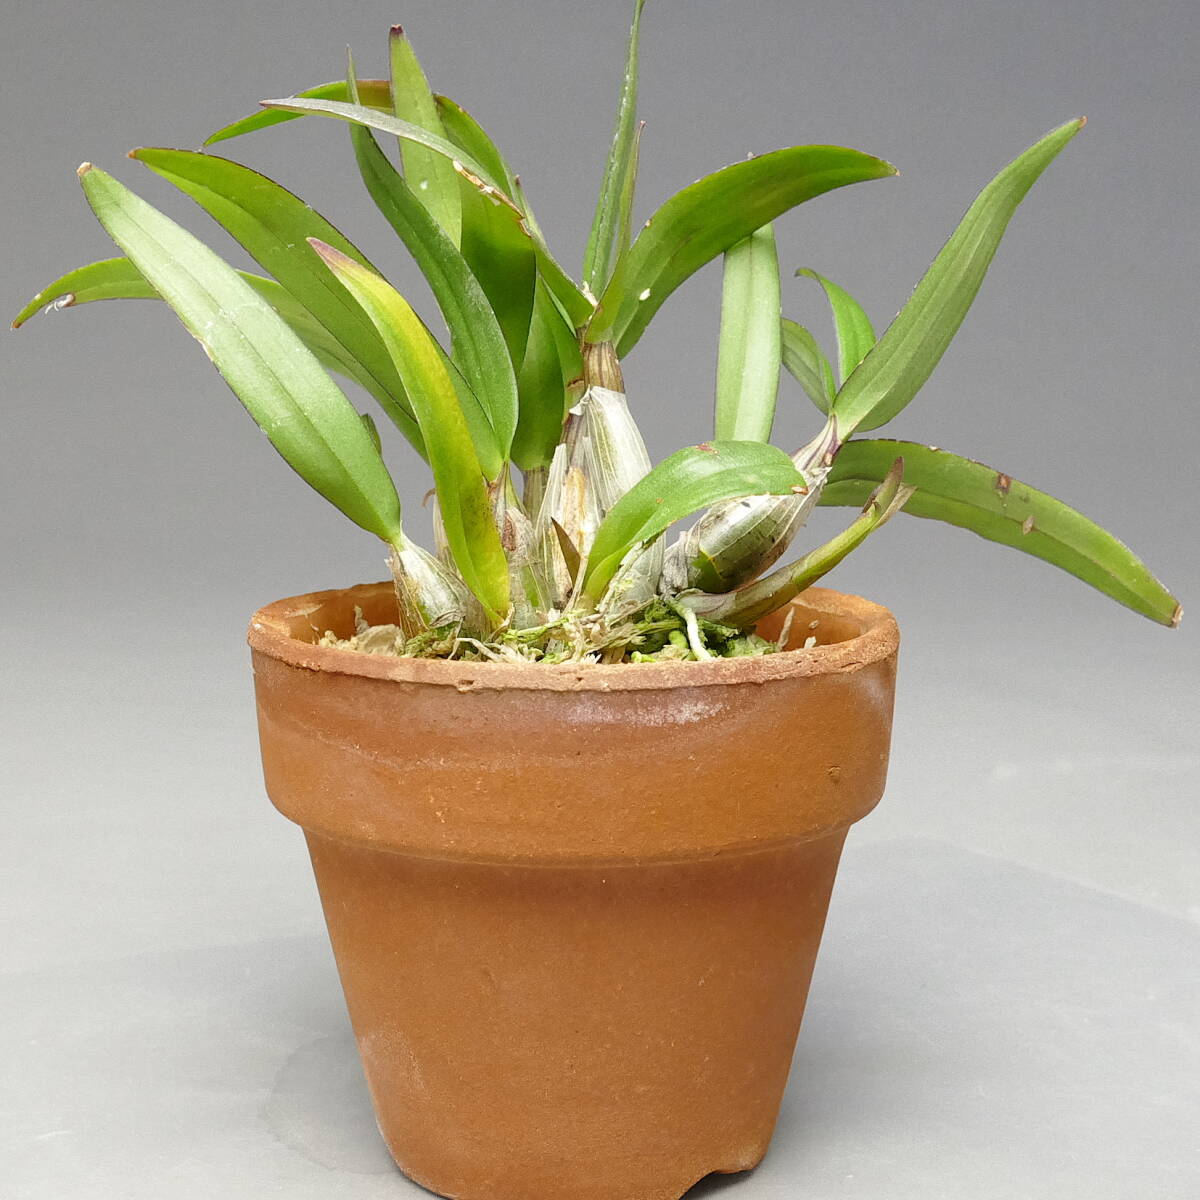 . орхидея . вид tendoroDendrobium (Den.) bigibbum var. compactum. цвет хорошо форма выбор другой особь Mini . орхидея маленький размер . орхидея tendorobium